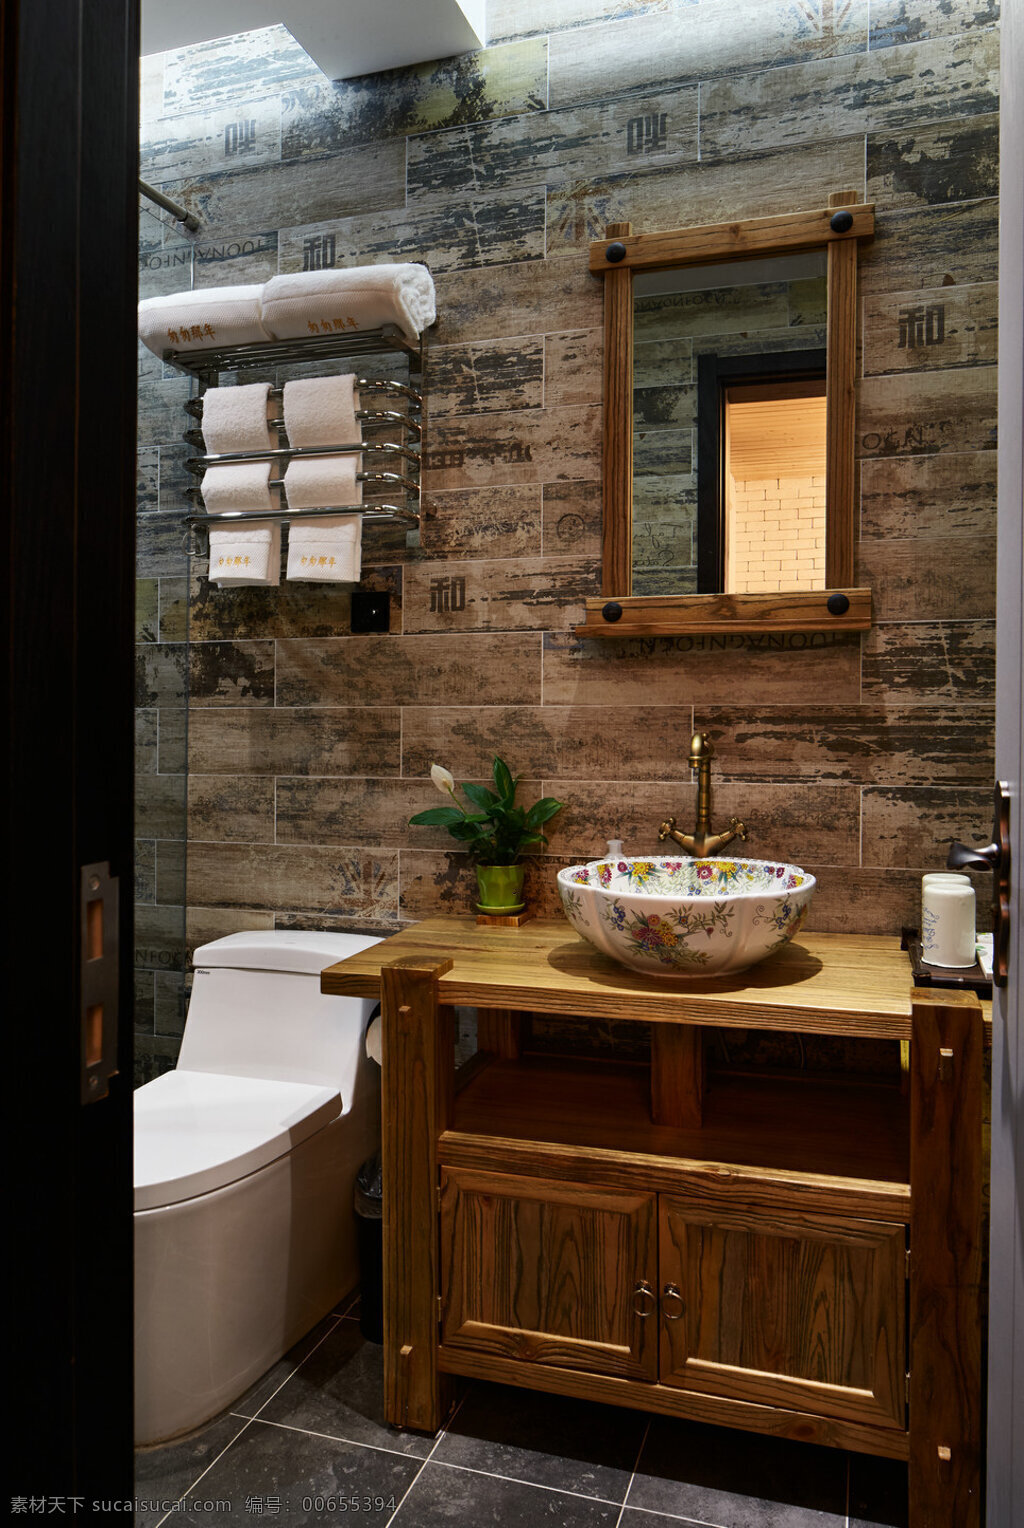 现代 时尚 卫生间 木制 柜子 室内装修 效果图 木制背景墙 木制柜子 深色地板 卫生间装修